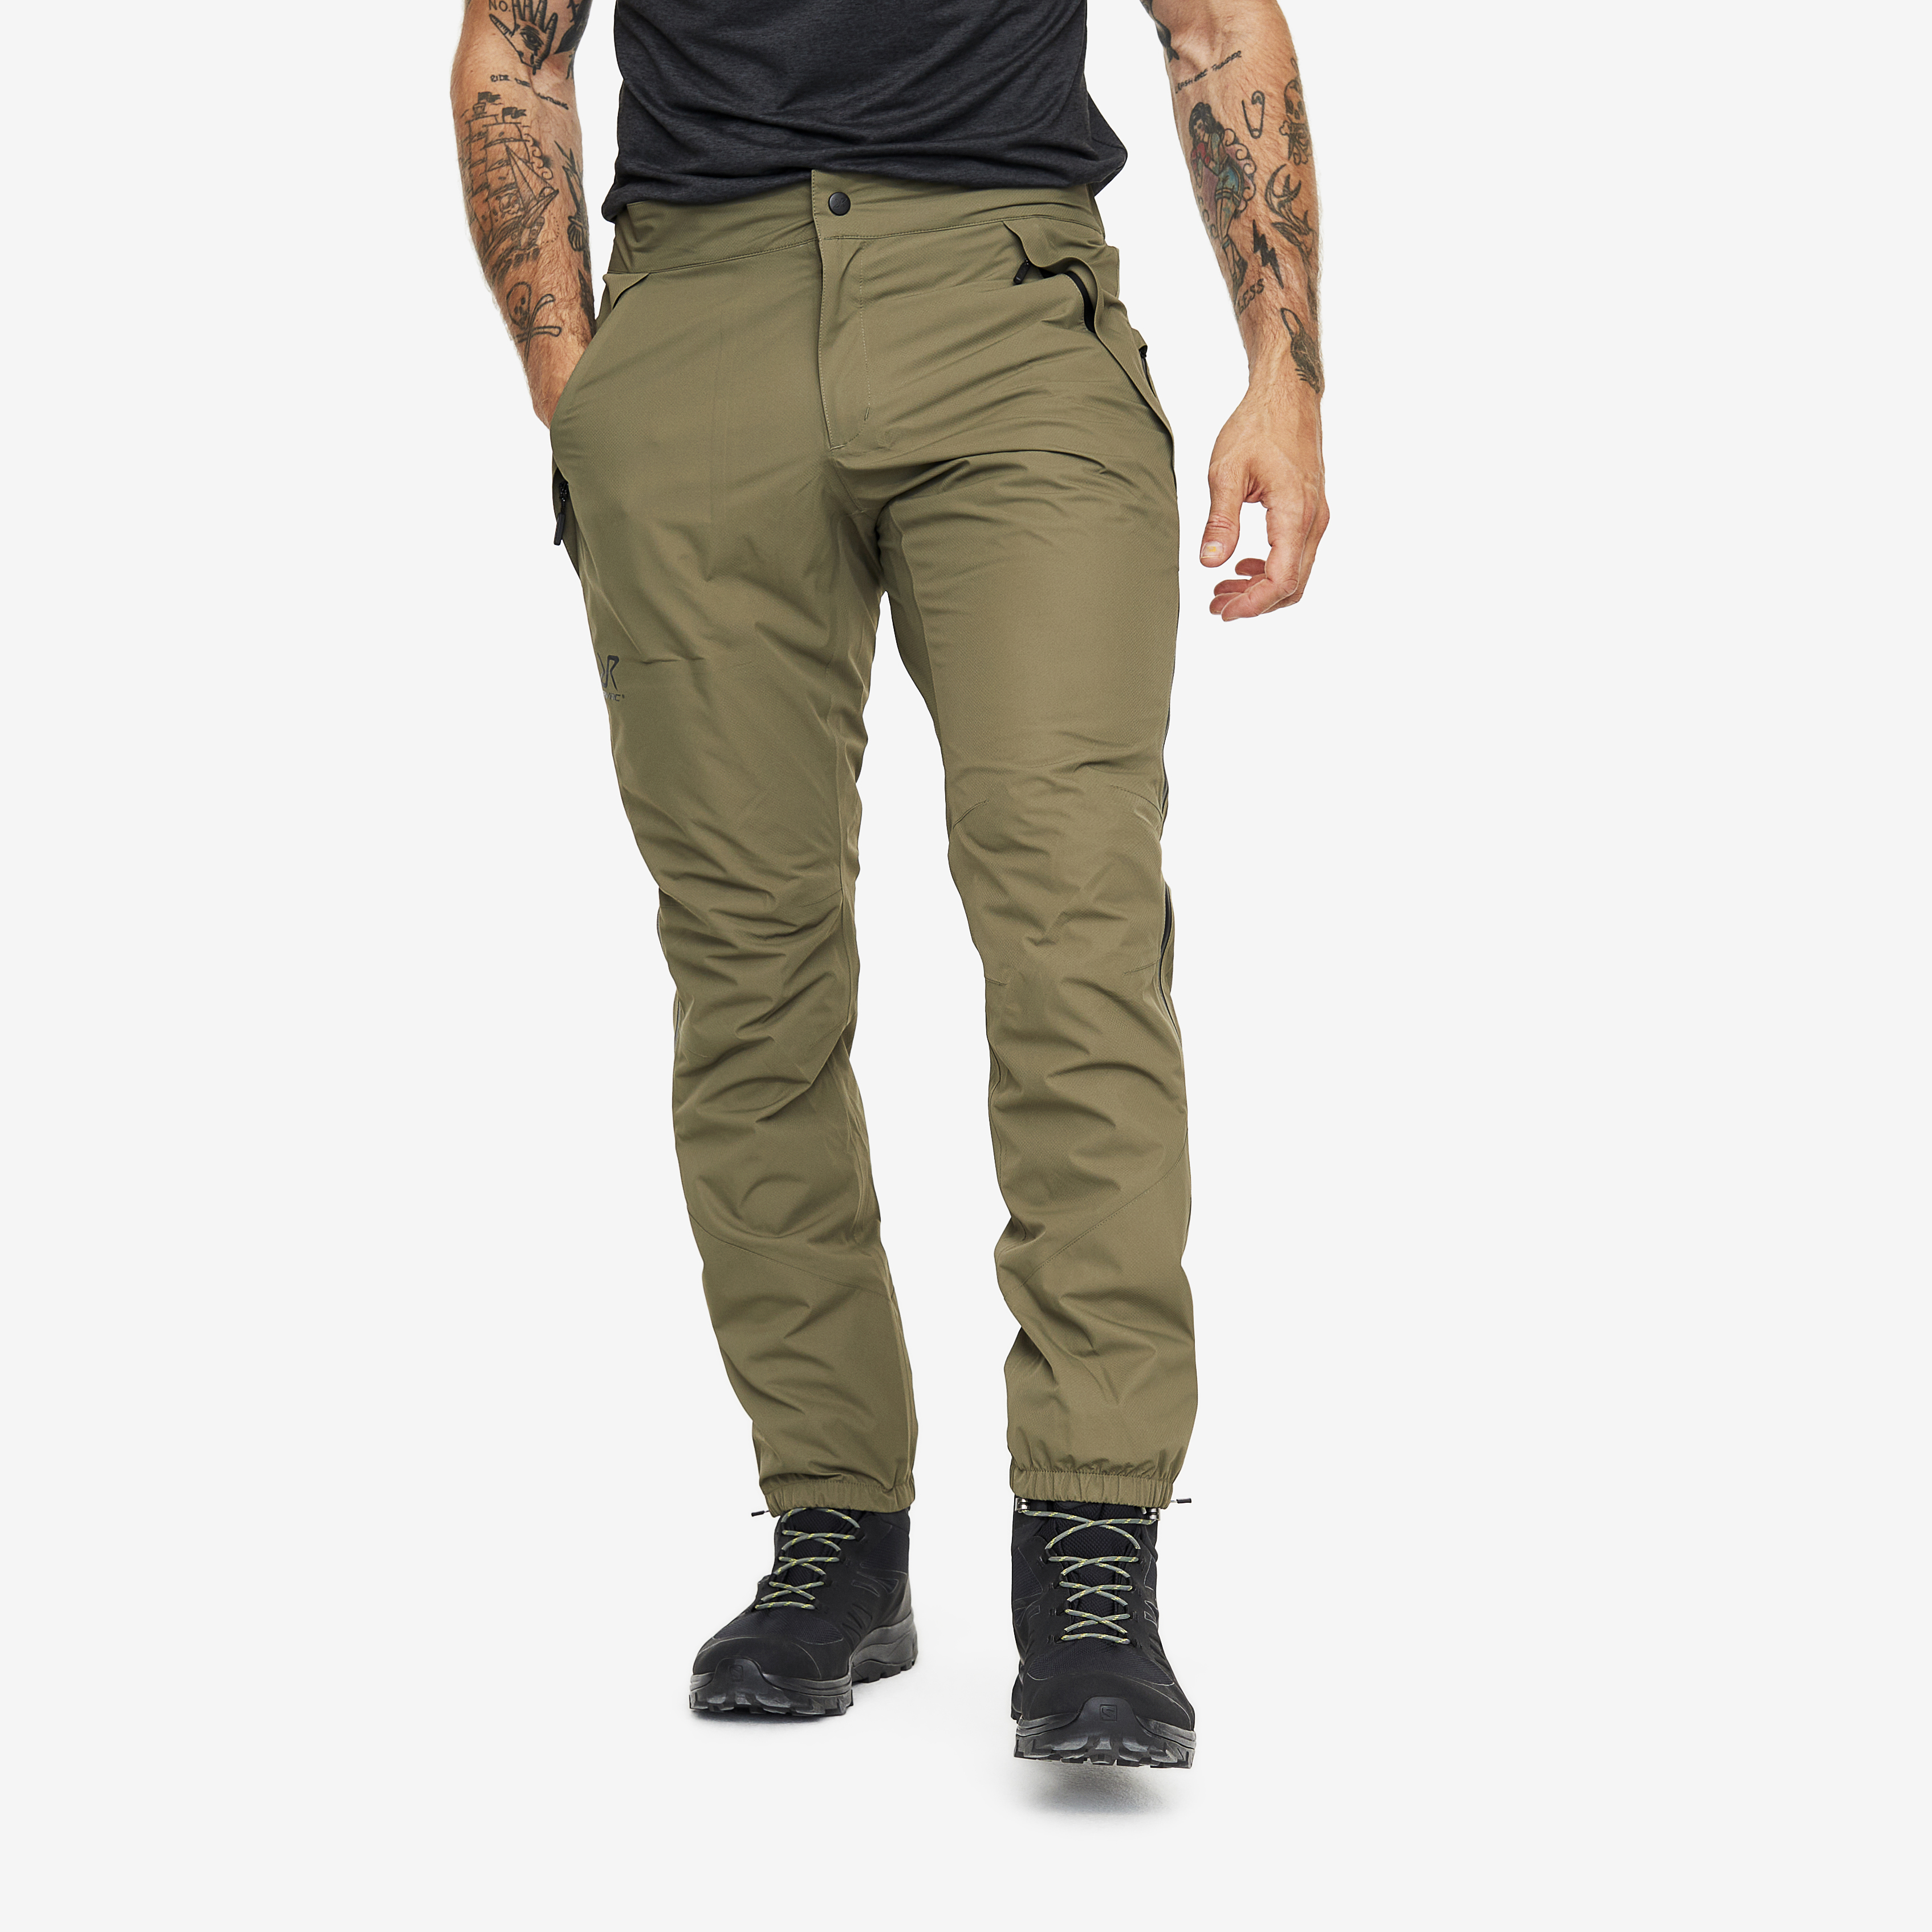 Typhoon waterproof trousers for men in green